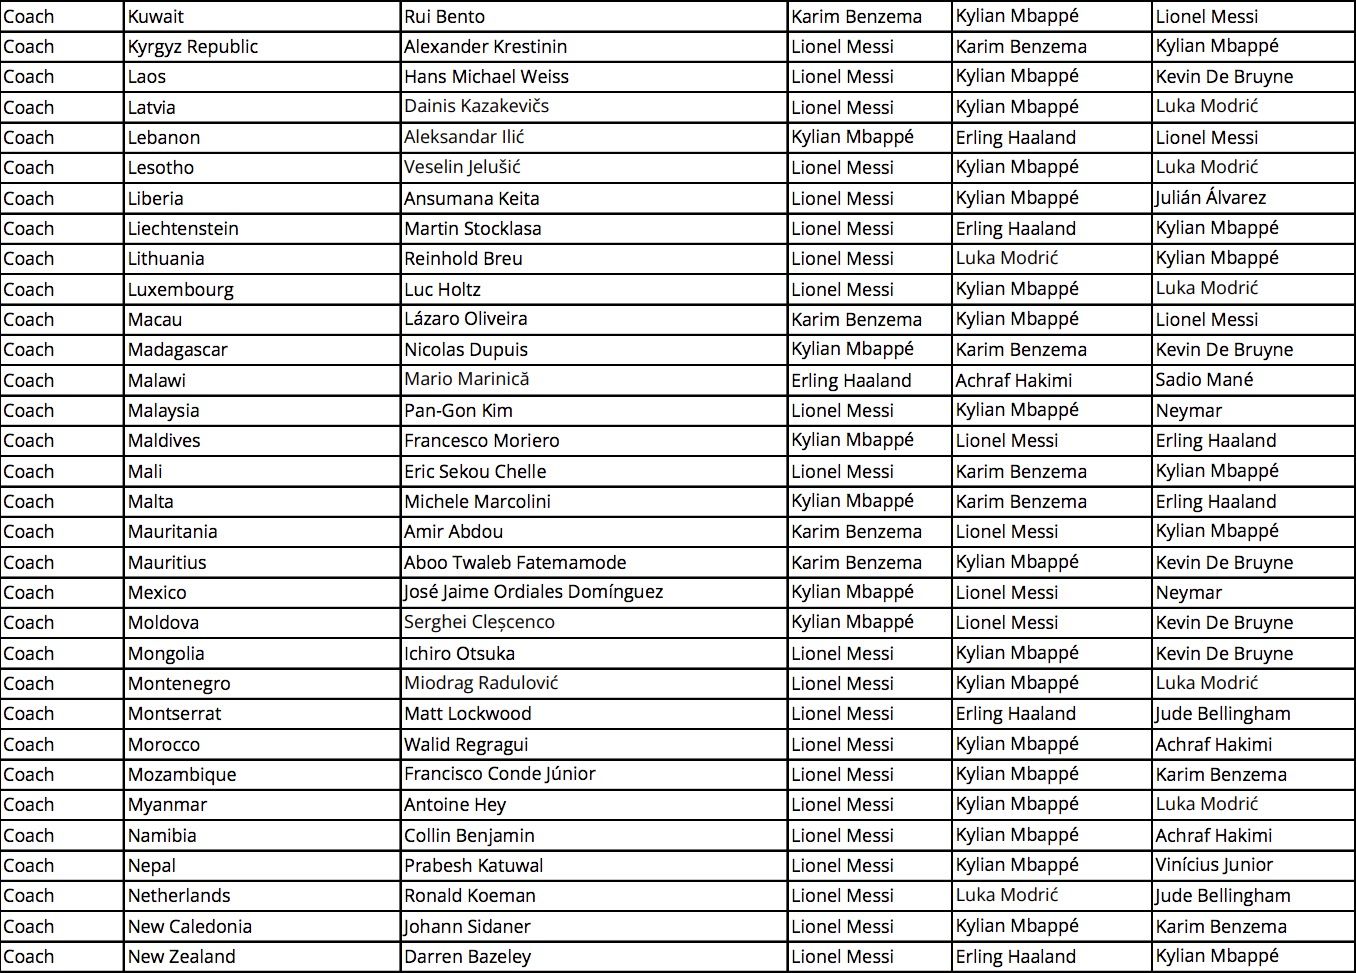 FIFA award voting: Full breakdown of votes including Mo Salah's bizarre ...